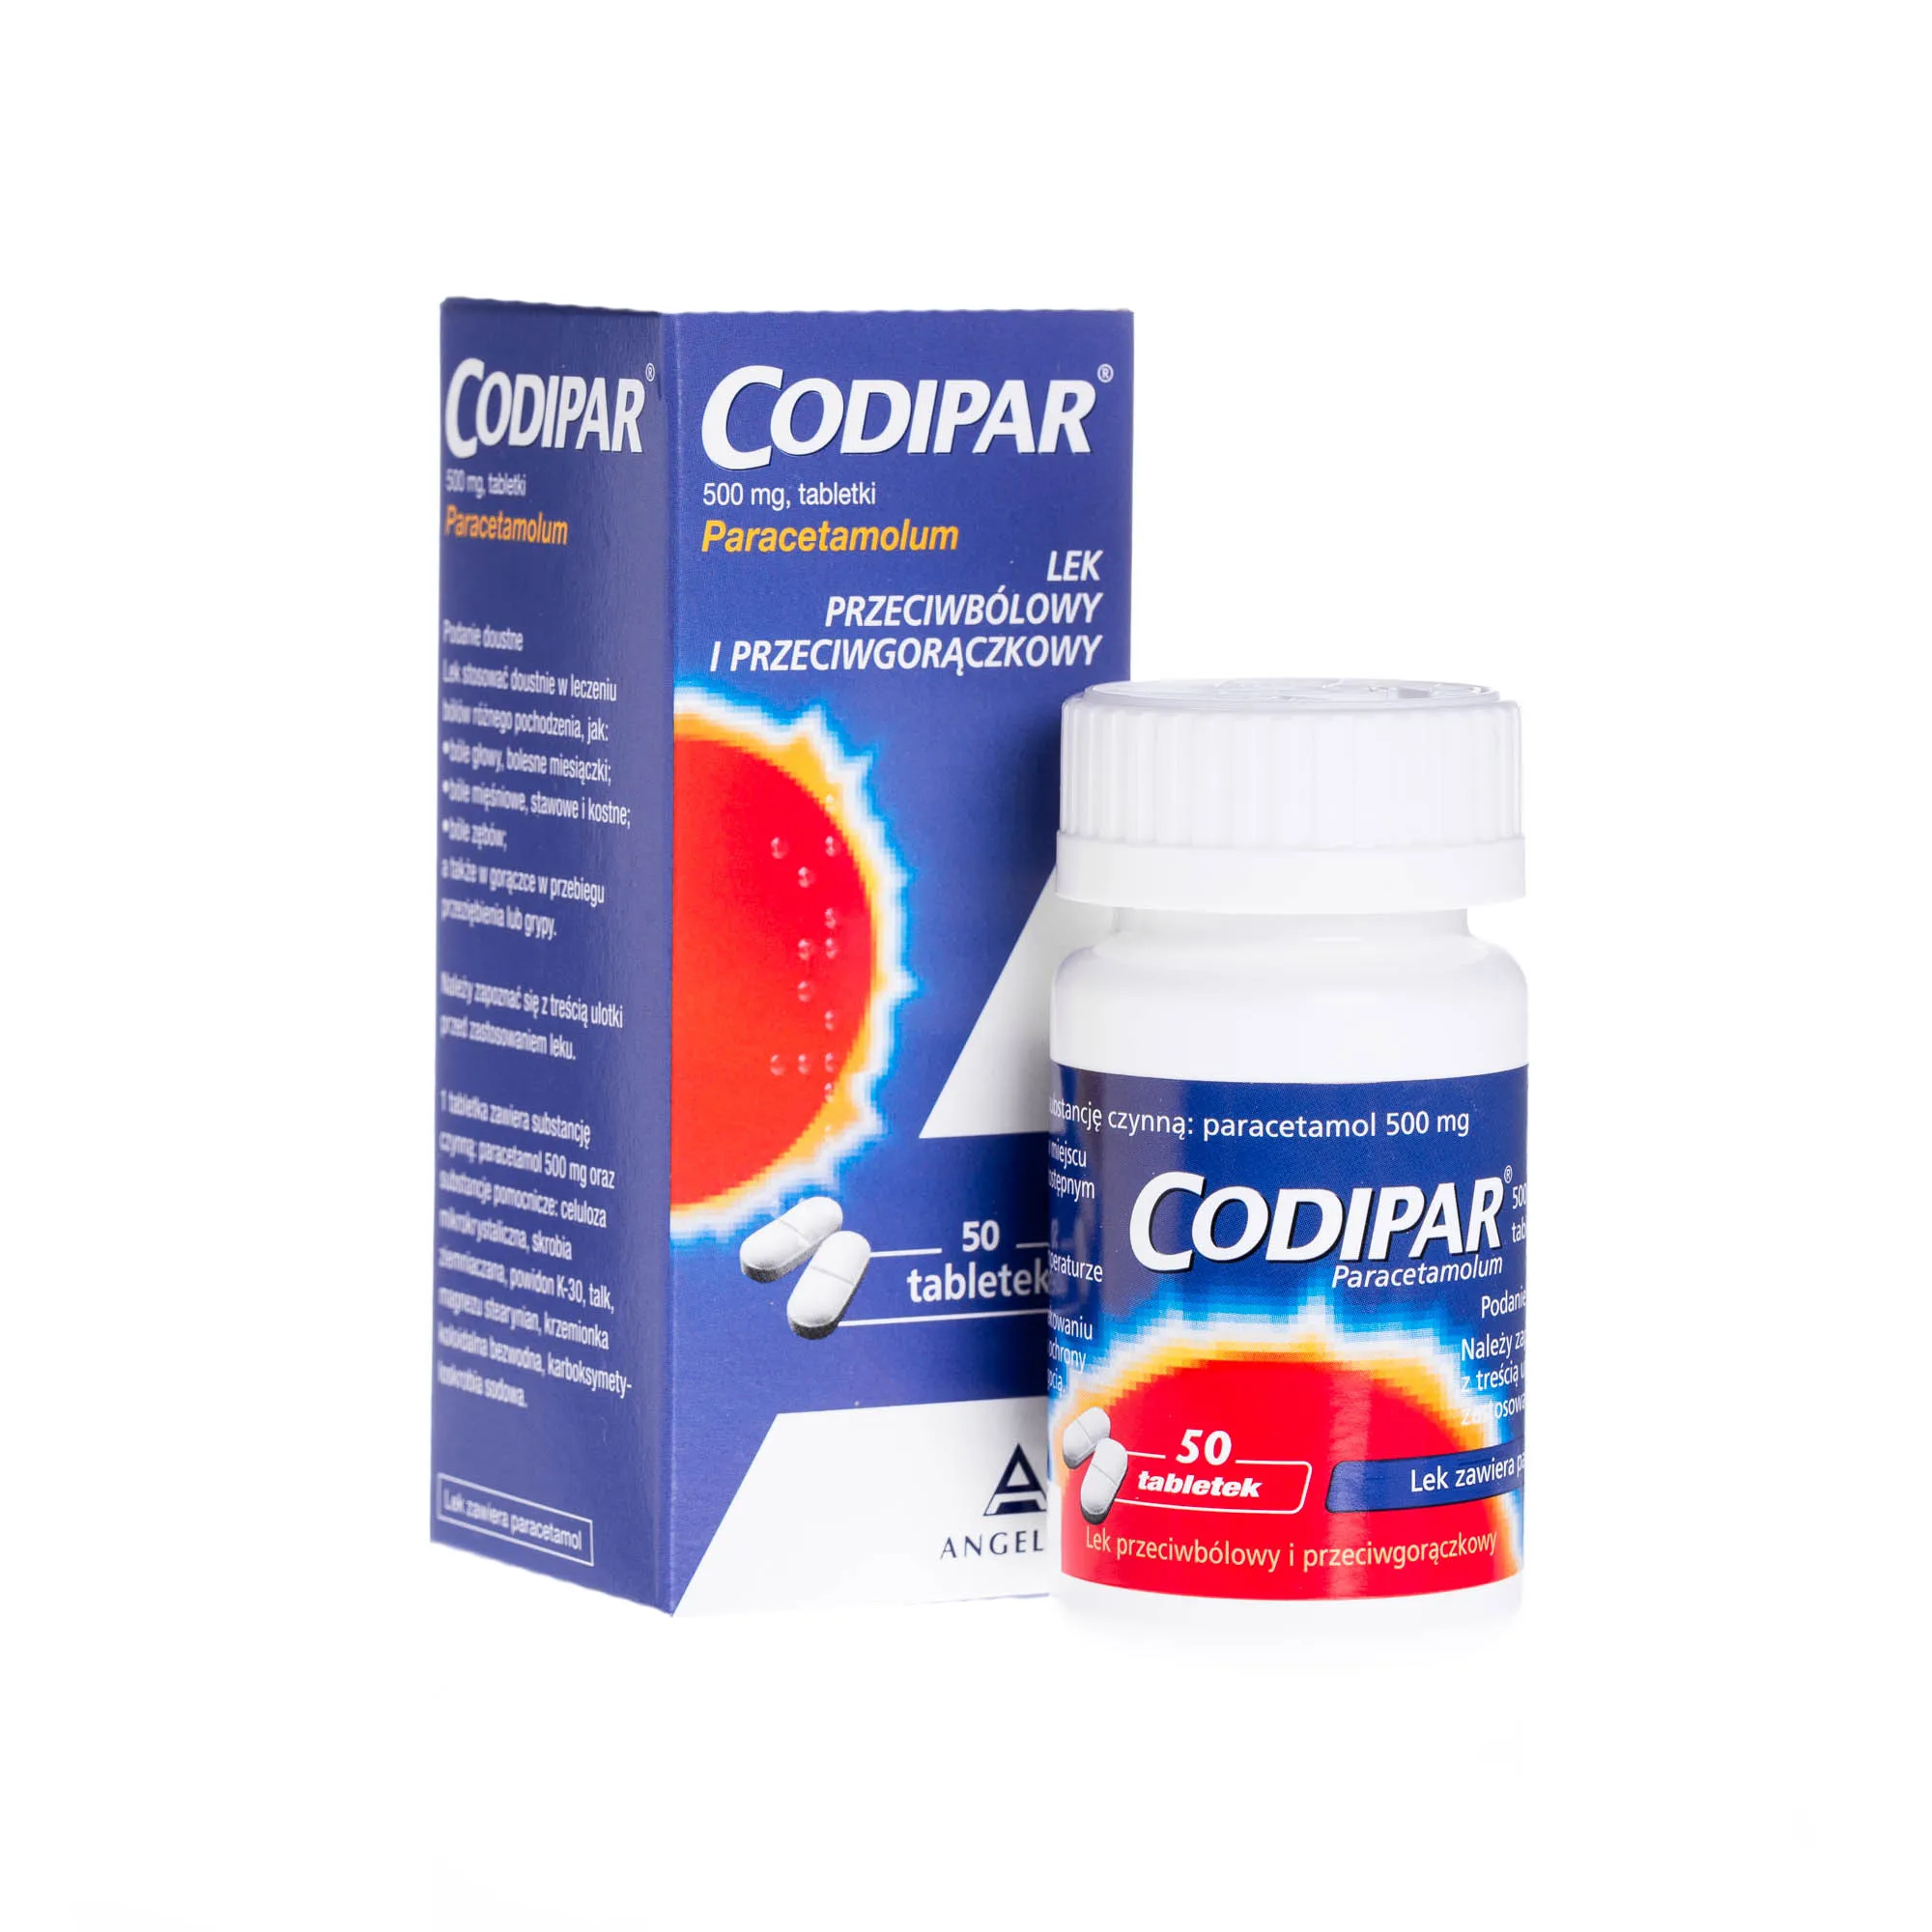 Codipar 500 mg - 50 tabletek o działaniu przeciwbólowym i przeciwgorączkowym 